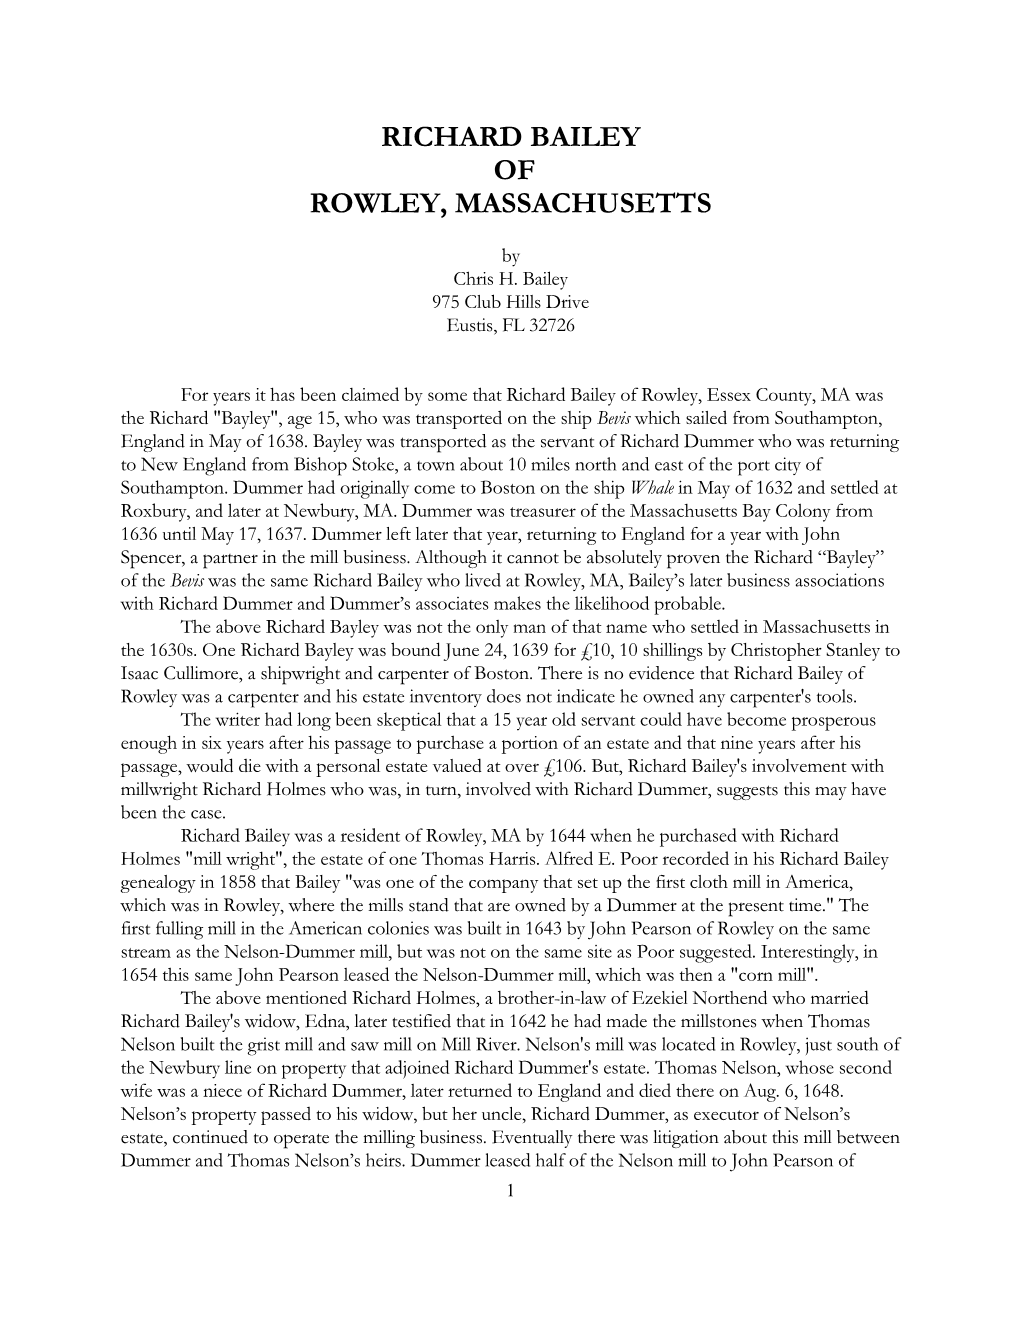 Richard Bailey of Rowley, Massachusetts